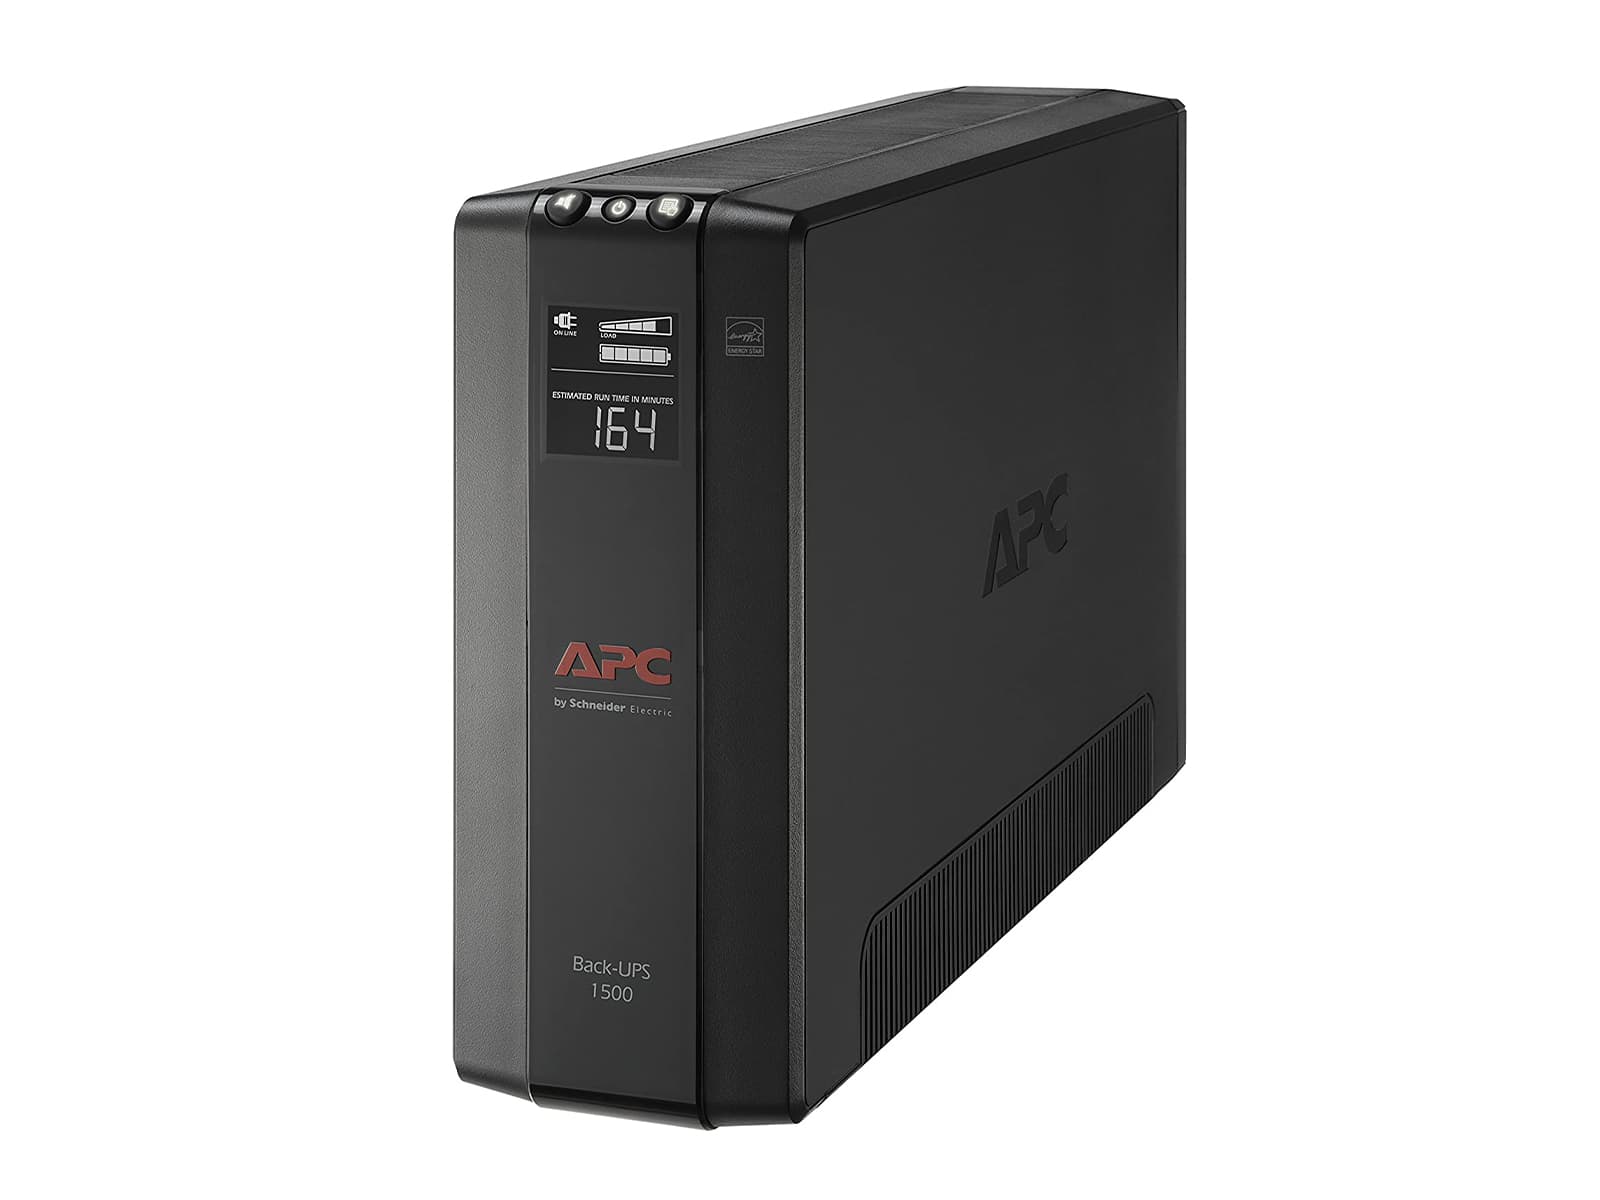 APC UPS、AVR 付き 1500VA UPS バッテリー バックアップおよびサージ プロテクター、Back-UPS Pro 電源 (BX1500M)